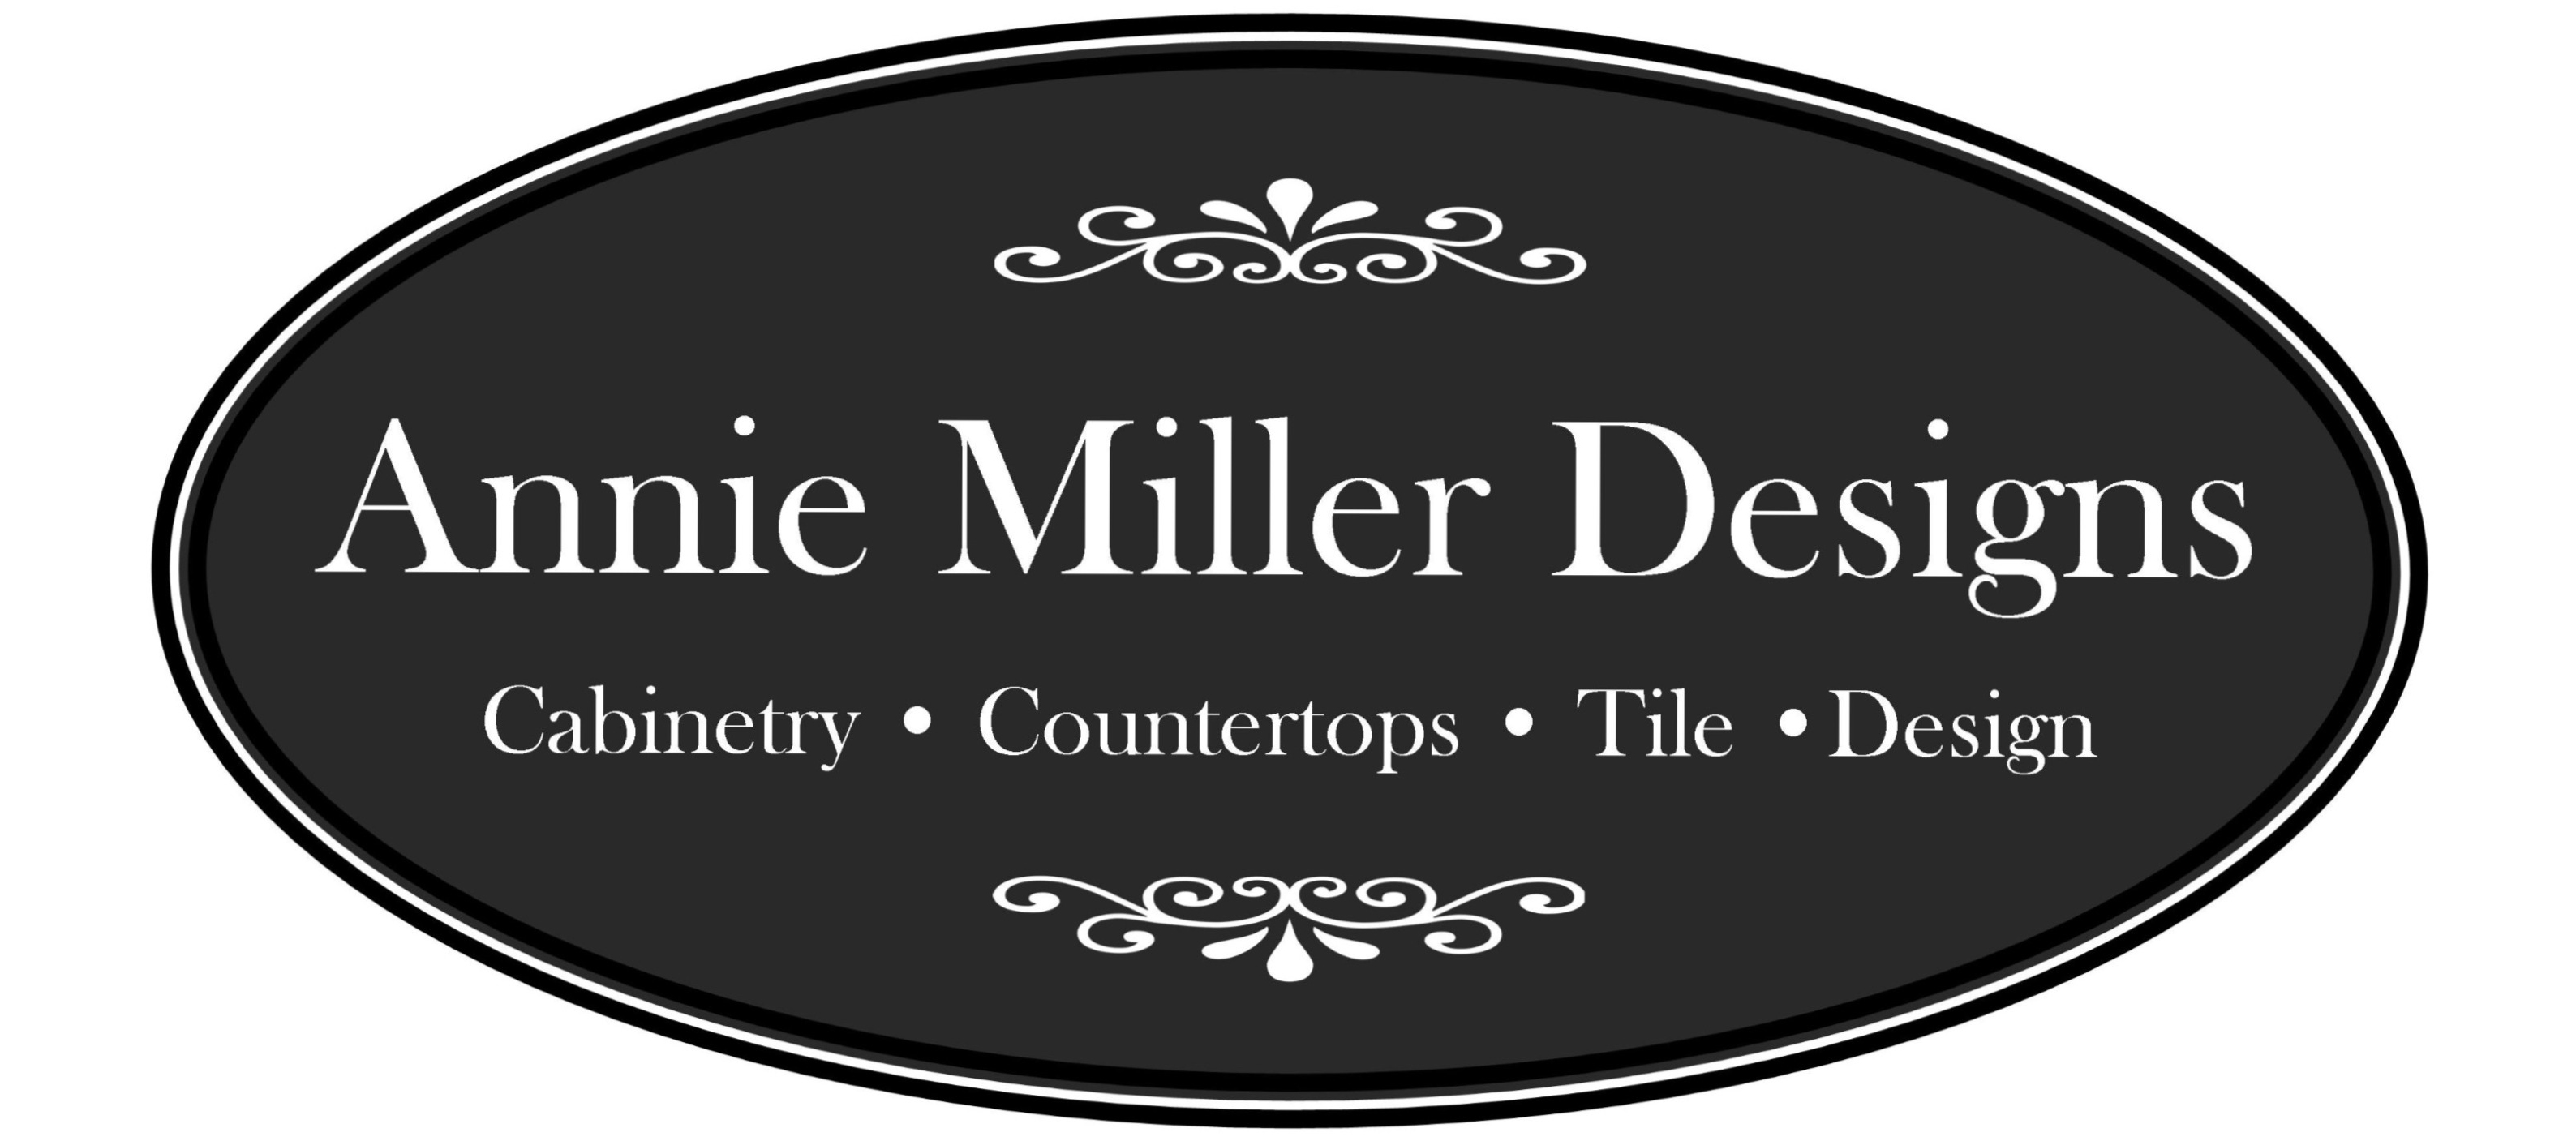 Annie Miller Designs